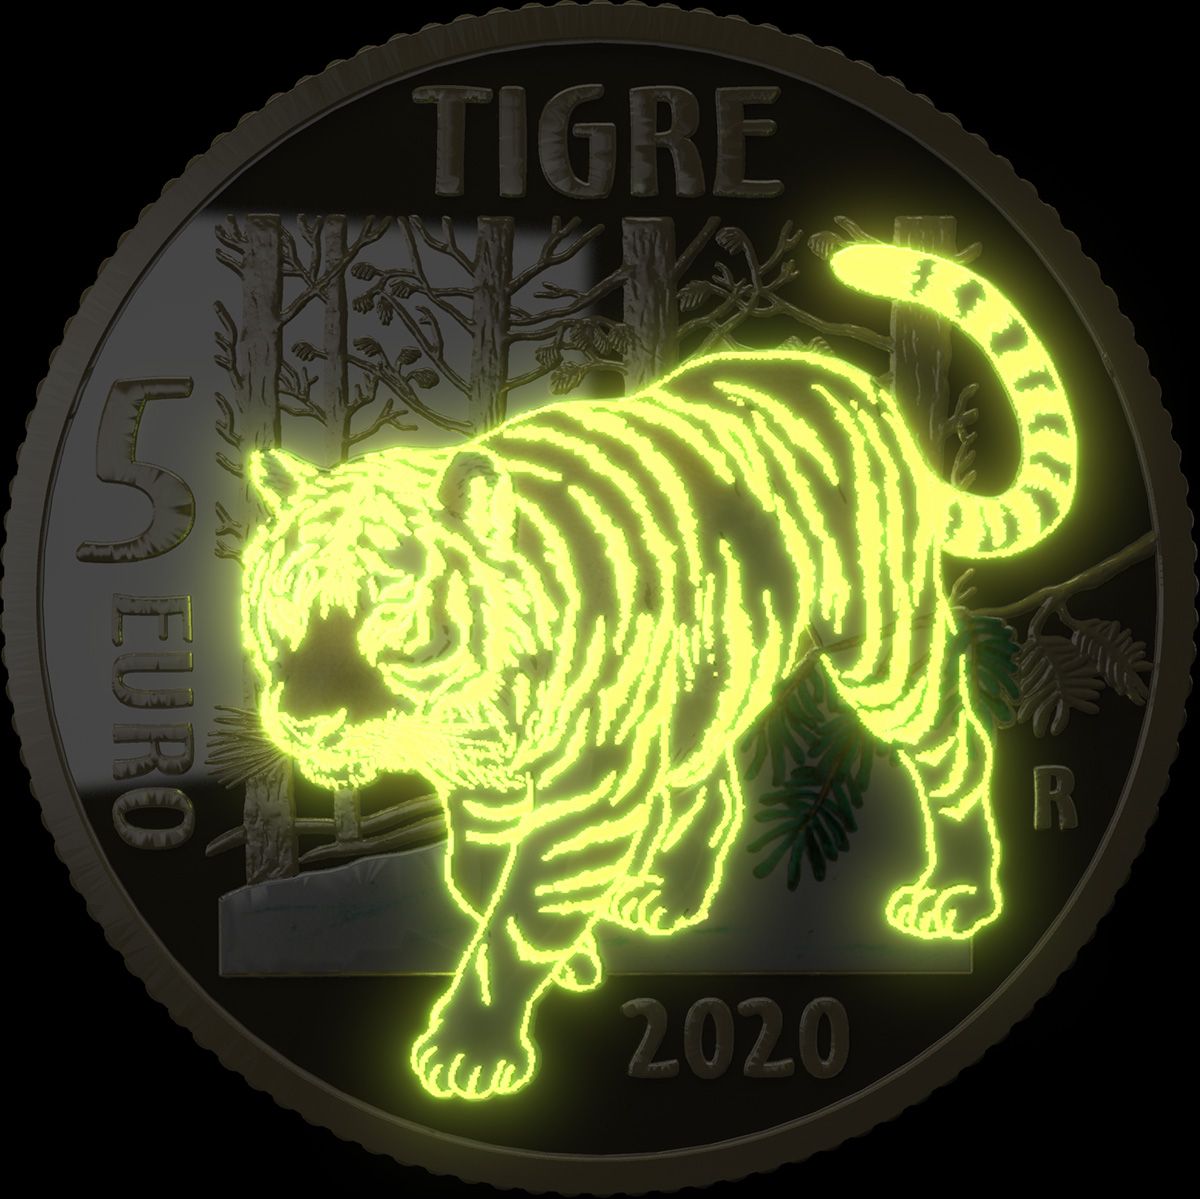 Si chiama effetto "glow in the dark" la fluorescenza che fa apparire la tigre al buio sui nuovi 5 euro d'Italia